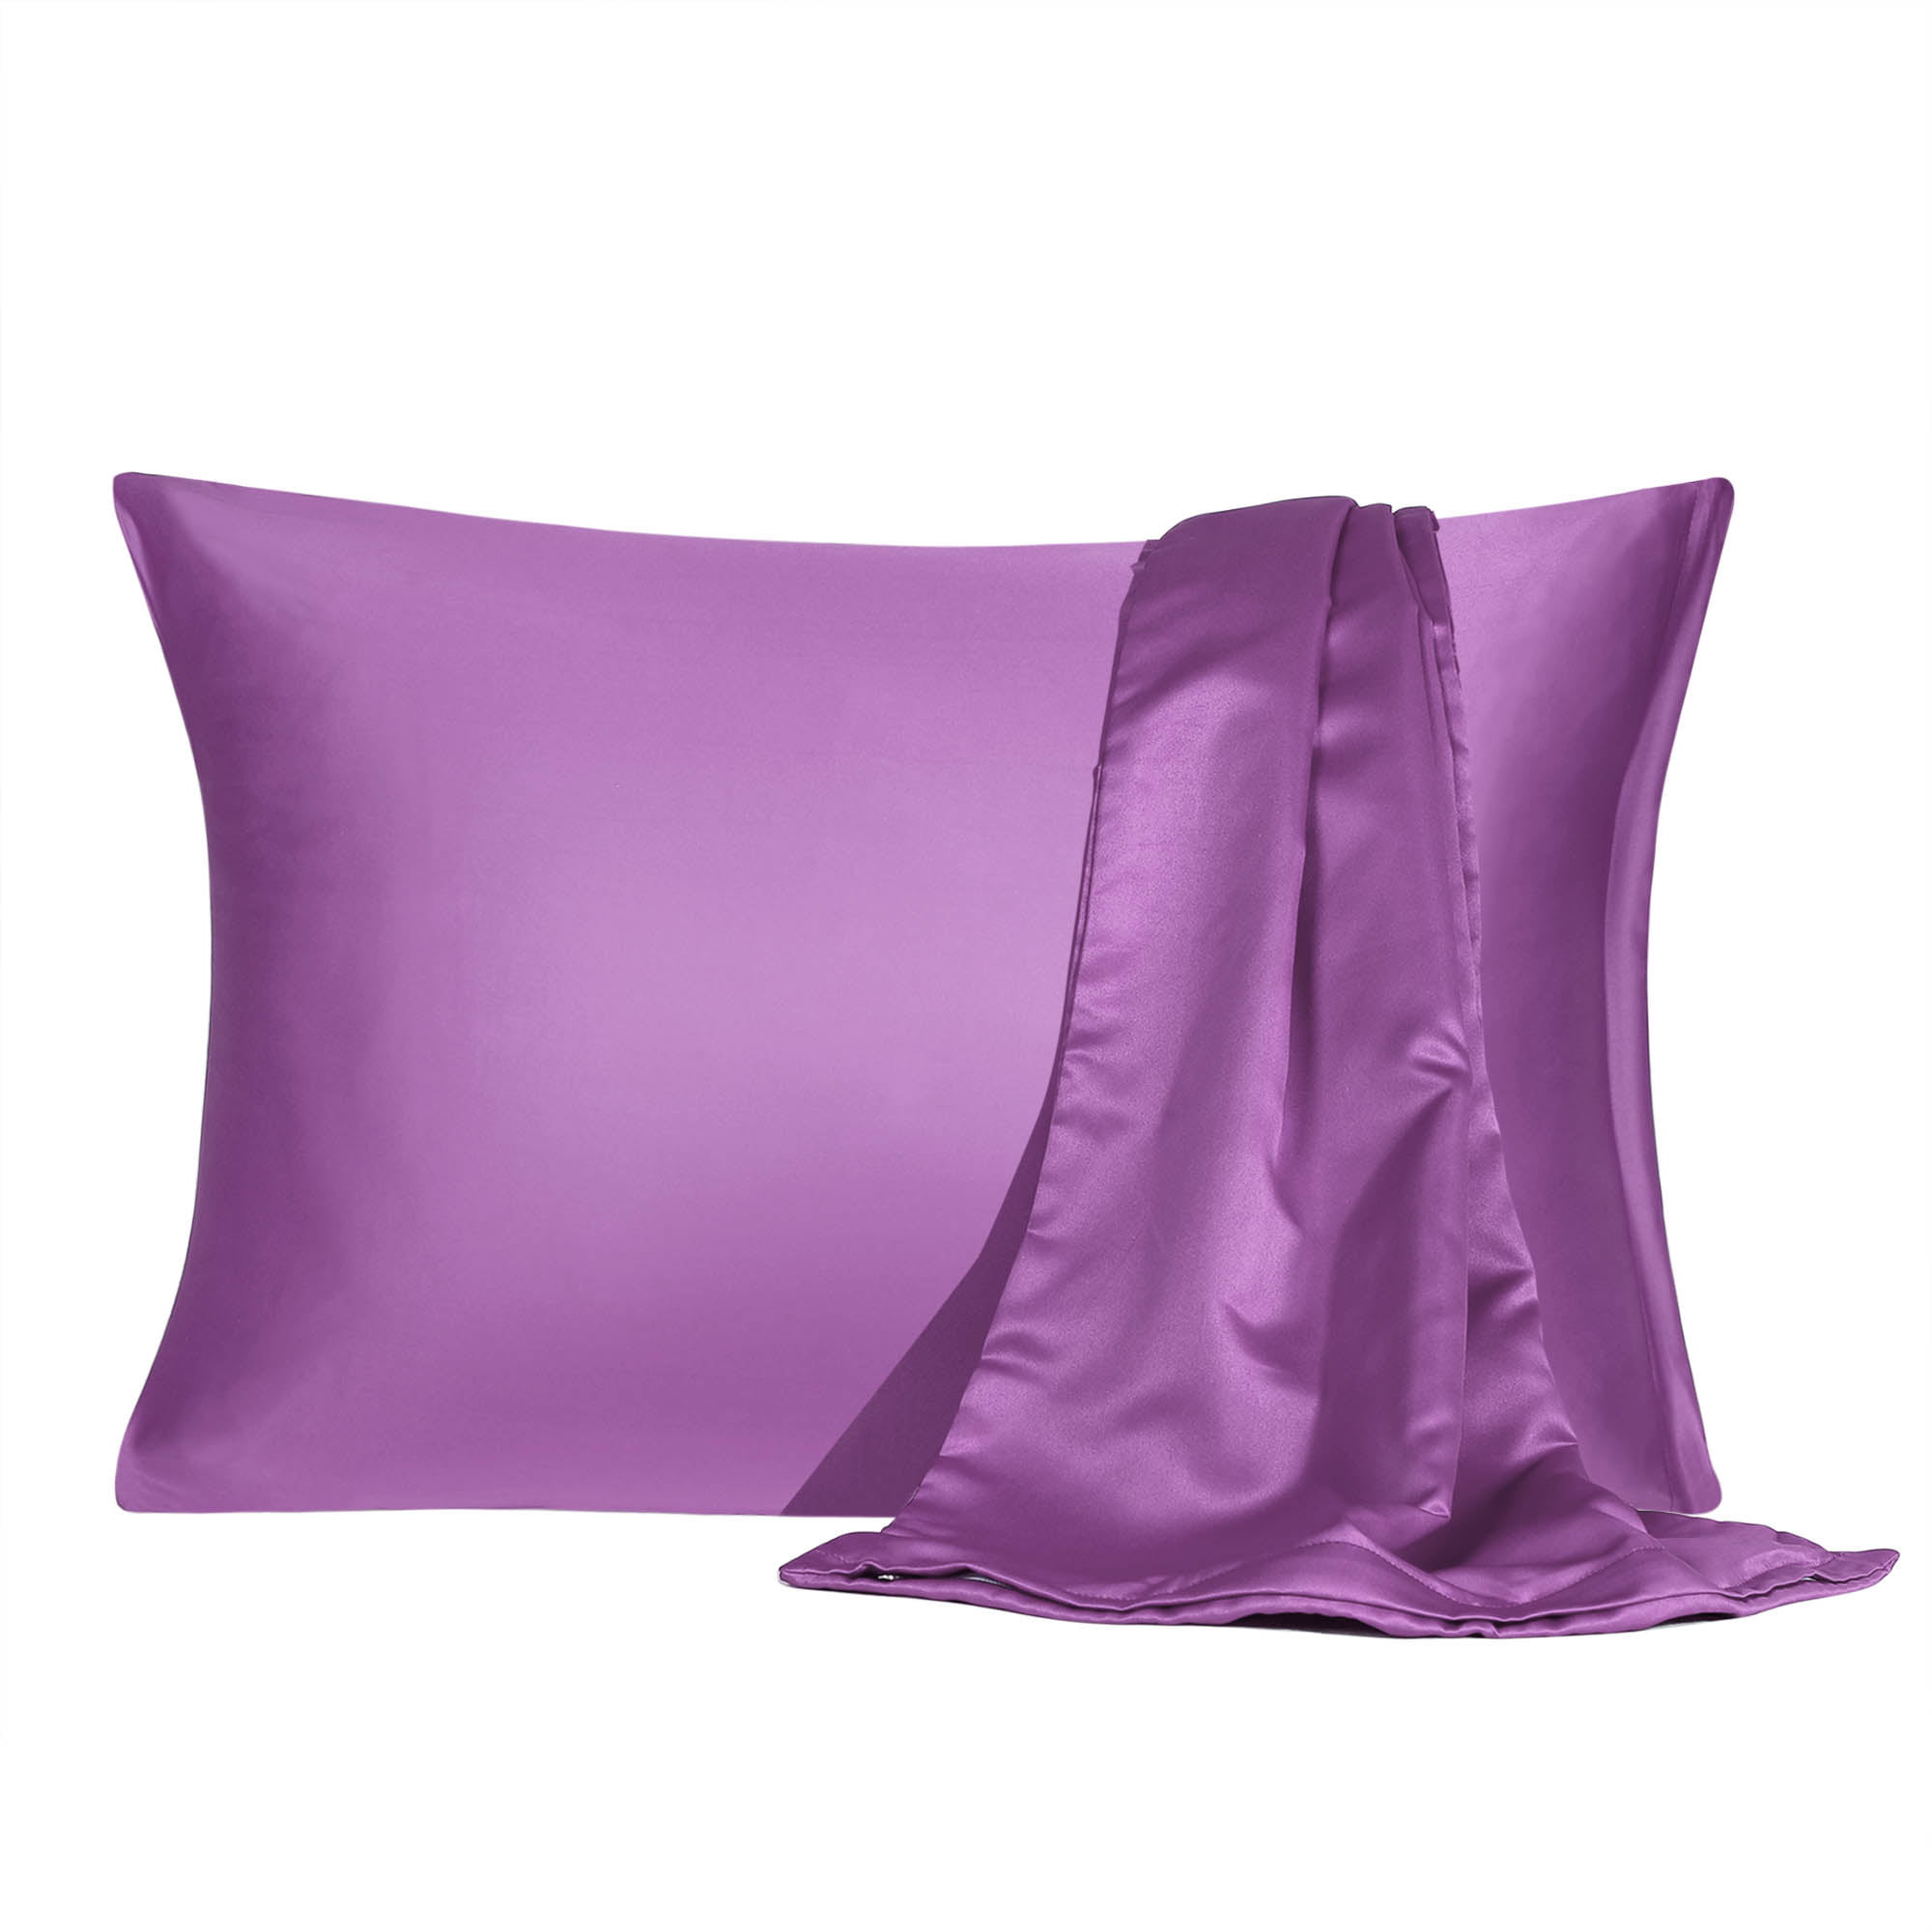 Satin Pillowcase With Zipper Standard Size Set Of 2 Silky Sateen Pillow 